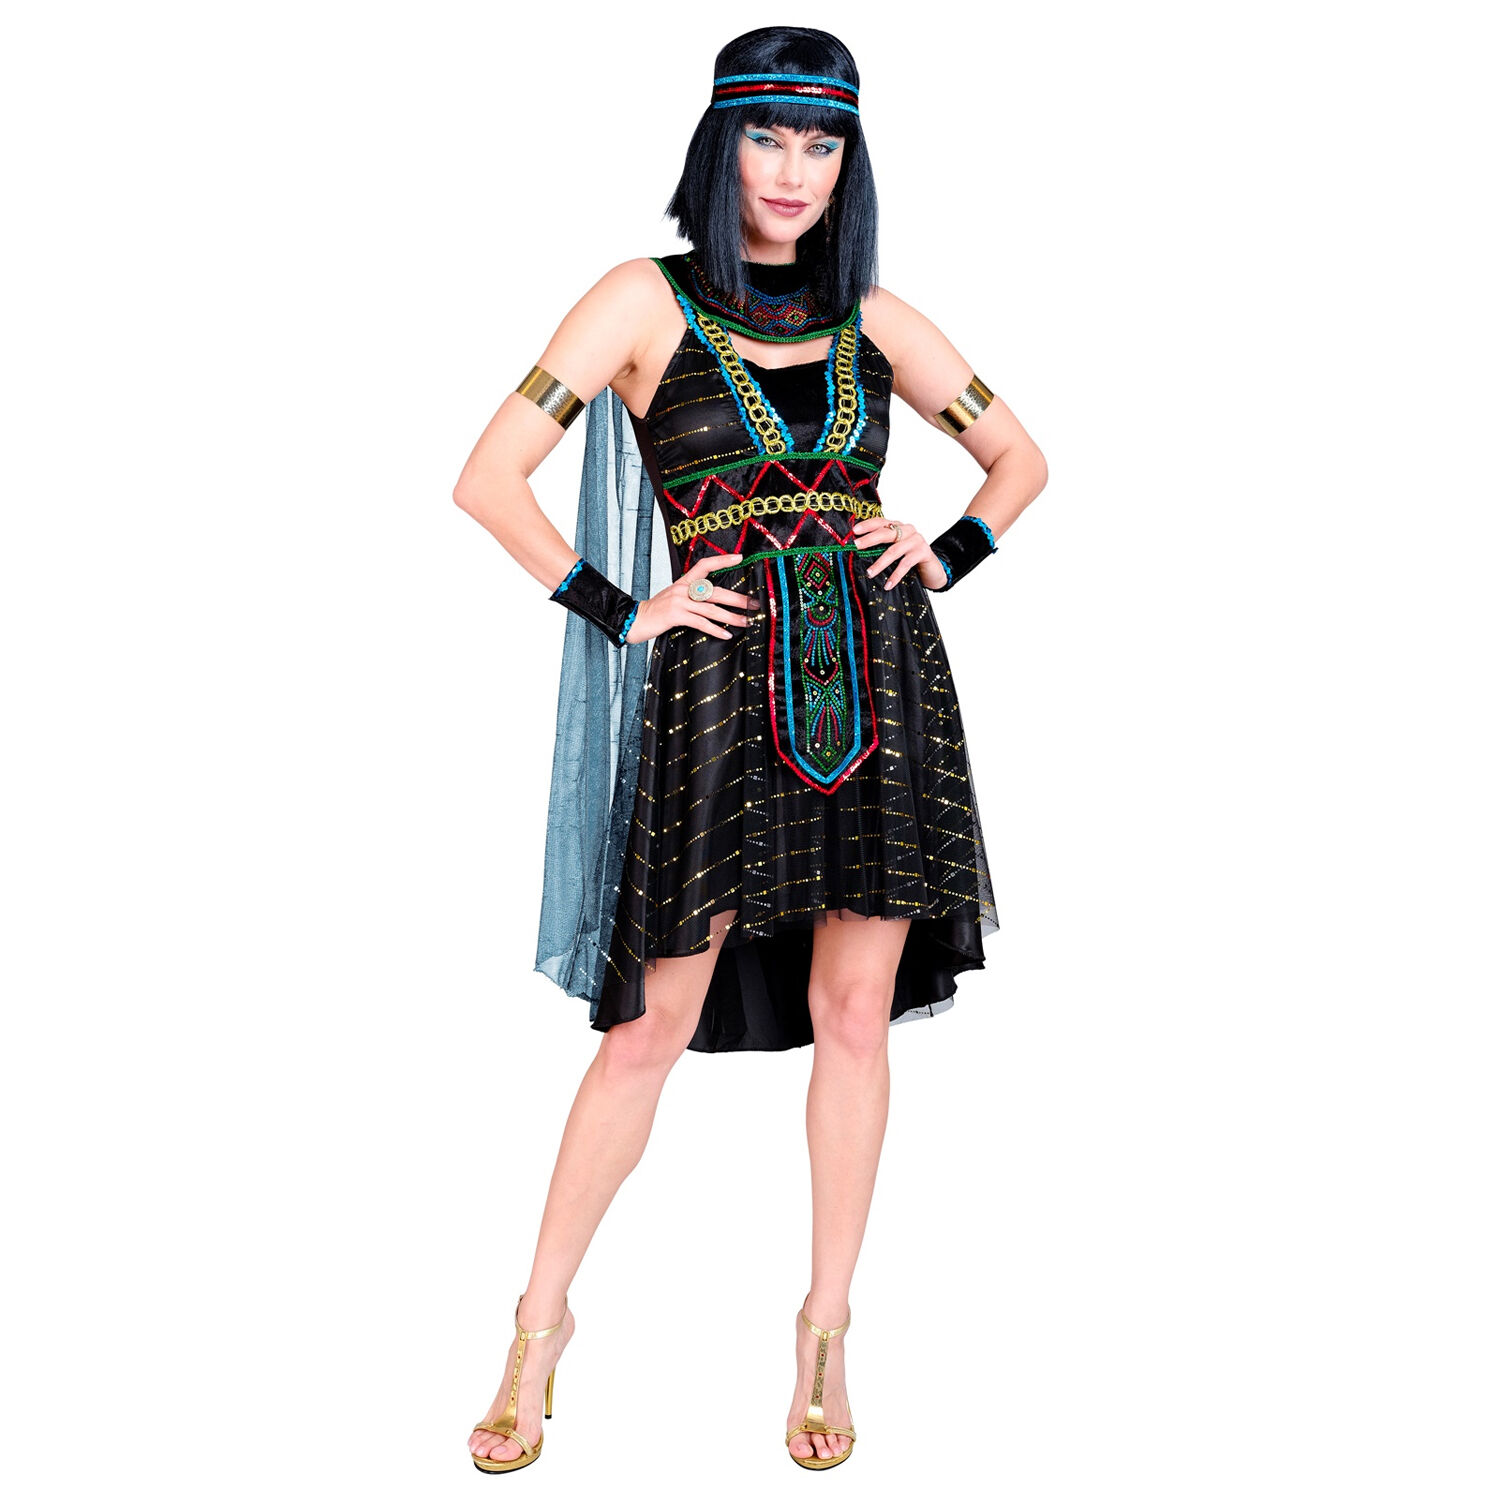 NEU Damen-Kostm gypterin / Cleopatra, Kleid mit Umhang, Armstulpen und Stirnband, schwarz, Gr. XS Bild 4